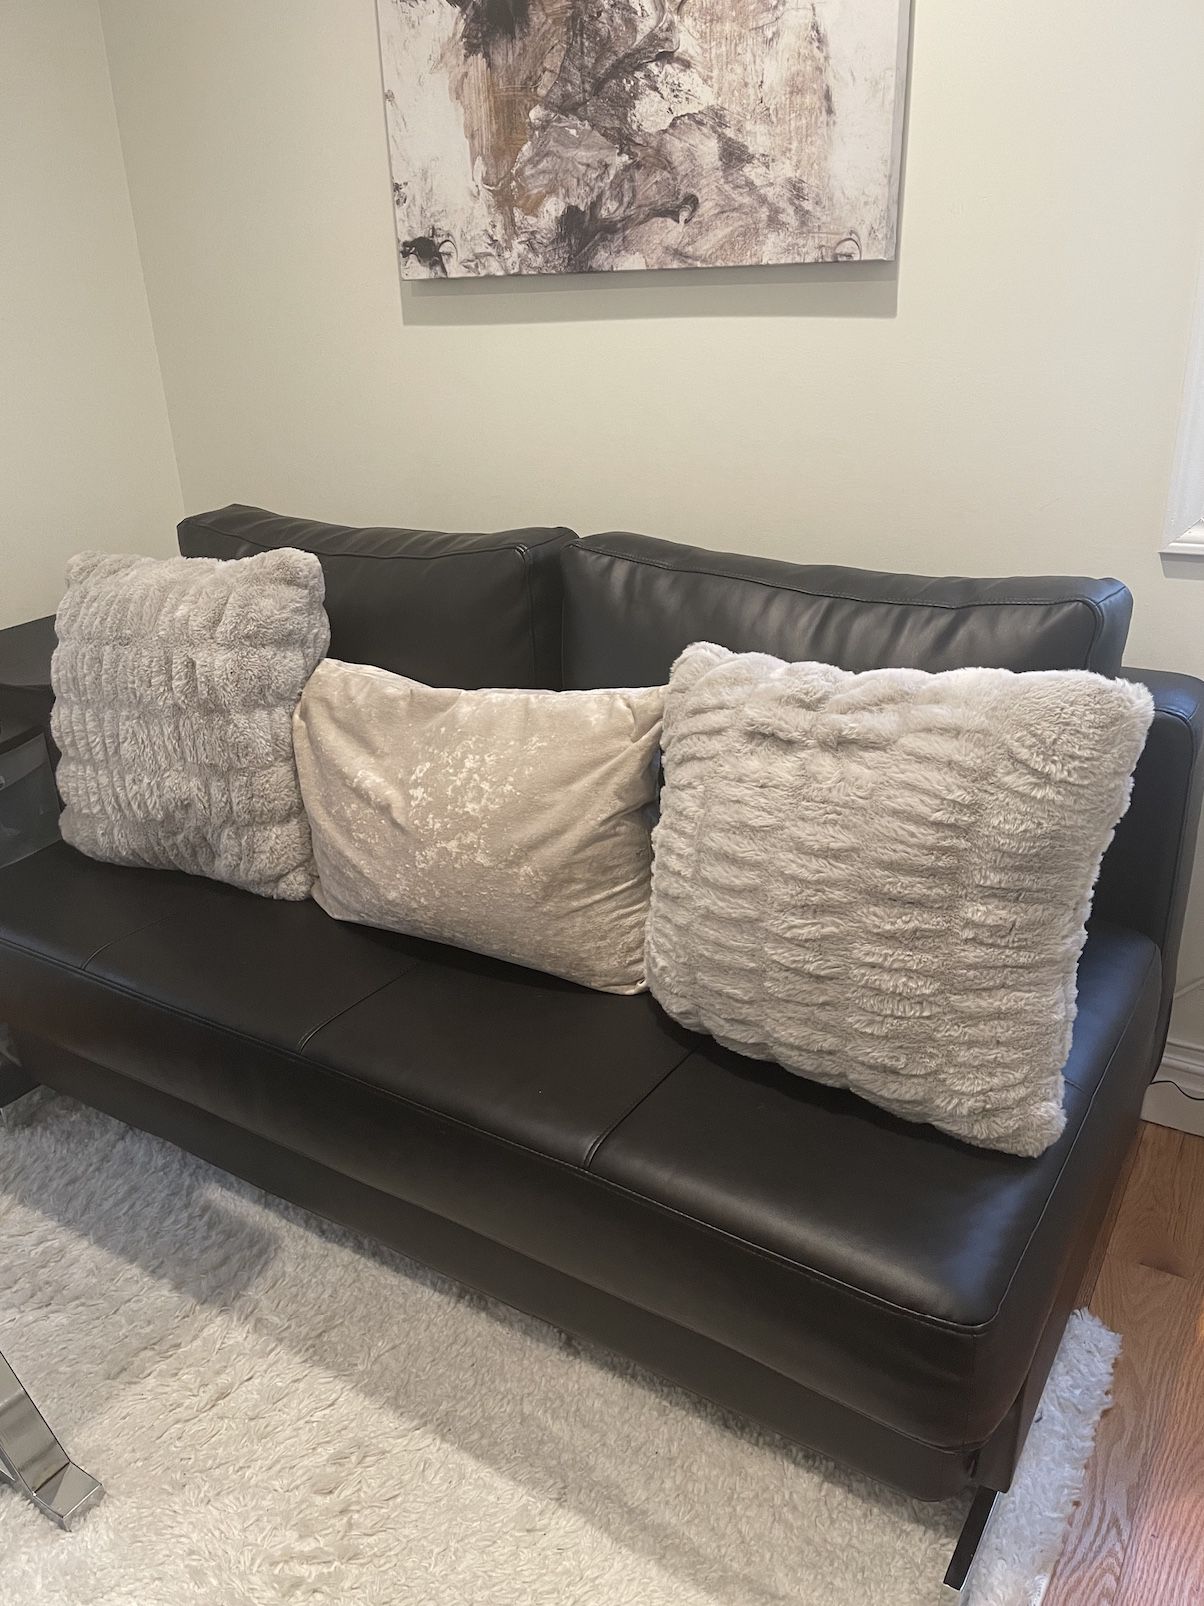 Black Sleeper Sofa, Queen Size